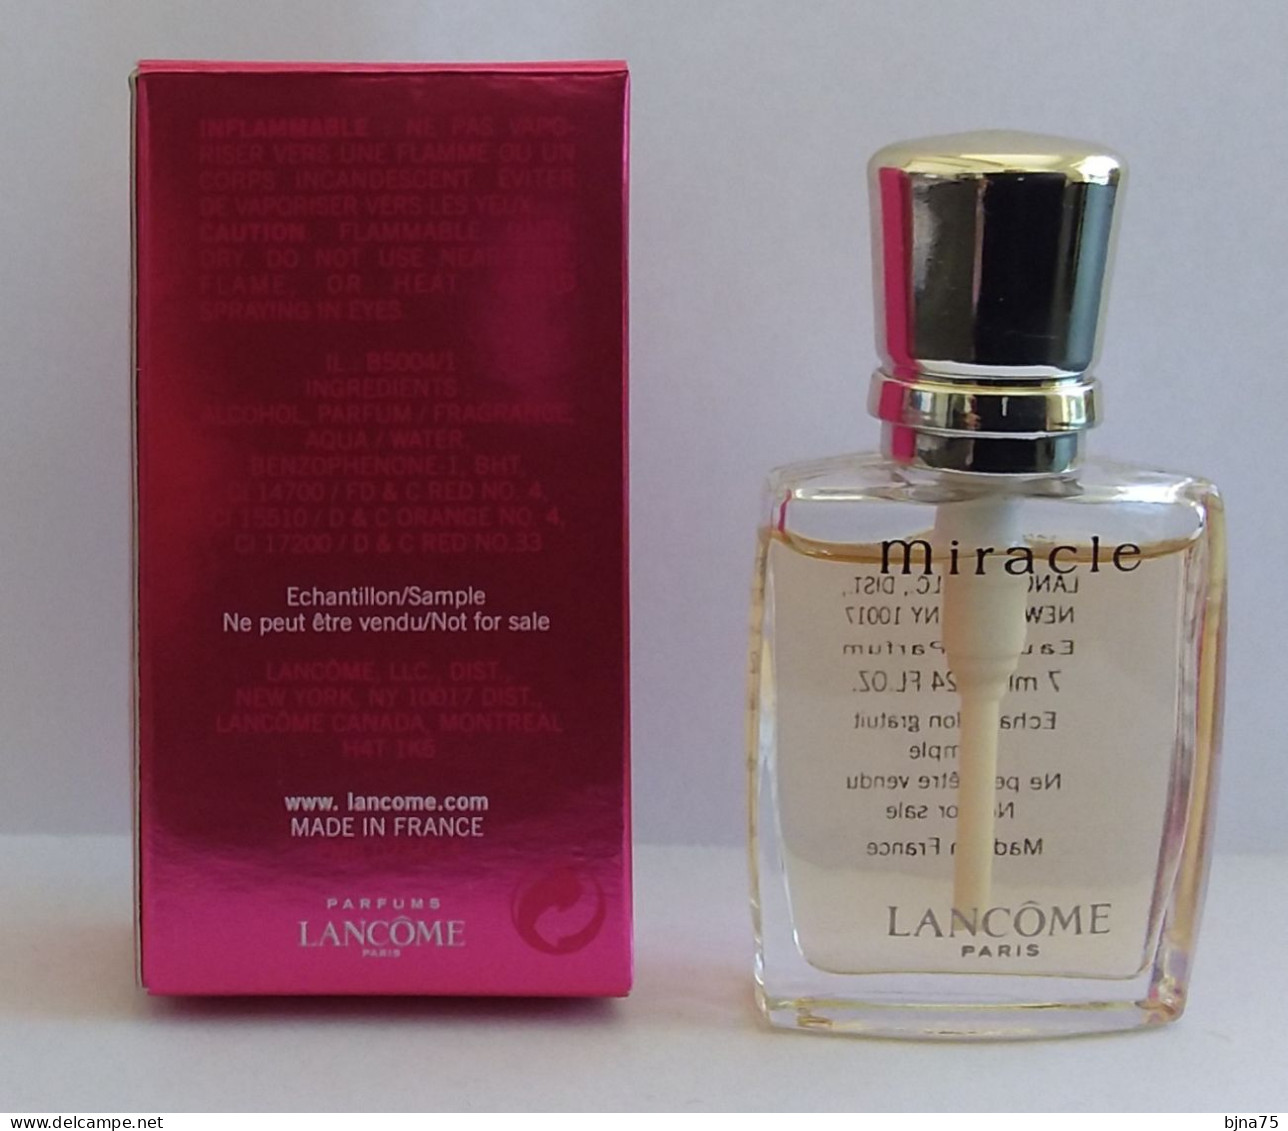 LANCÔME Miniature Eau De Parfum  Miracle  0.24 Fl Oz. 7 Ml - Vaporisateur - Boîte - Miniatures Womens' Fragrances (in Box)